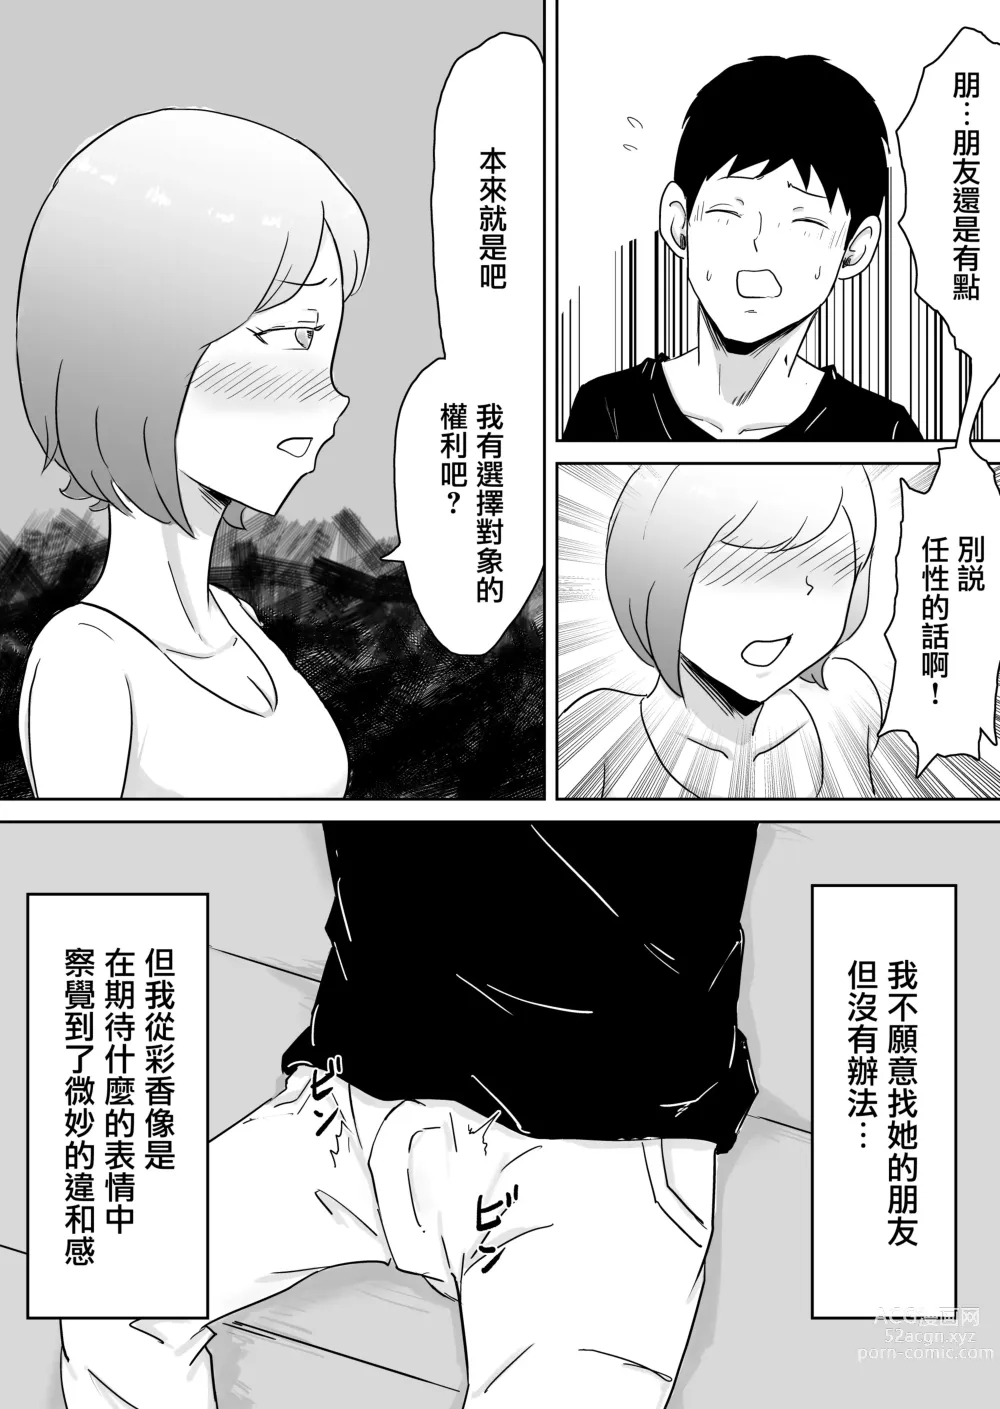 Page 7 of doujinshi 早知不該將妻子拱手讓人